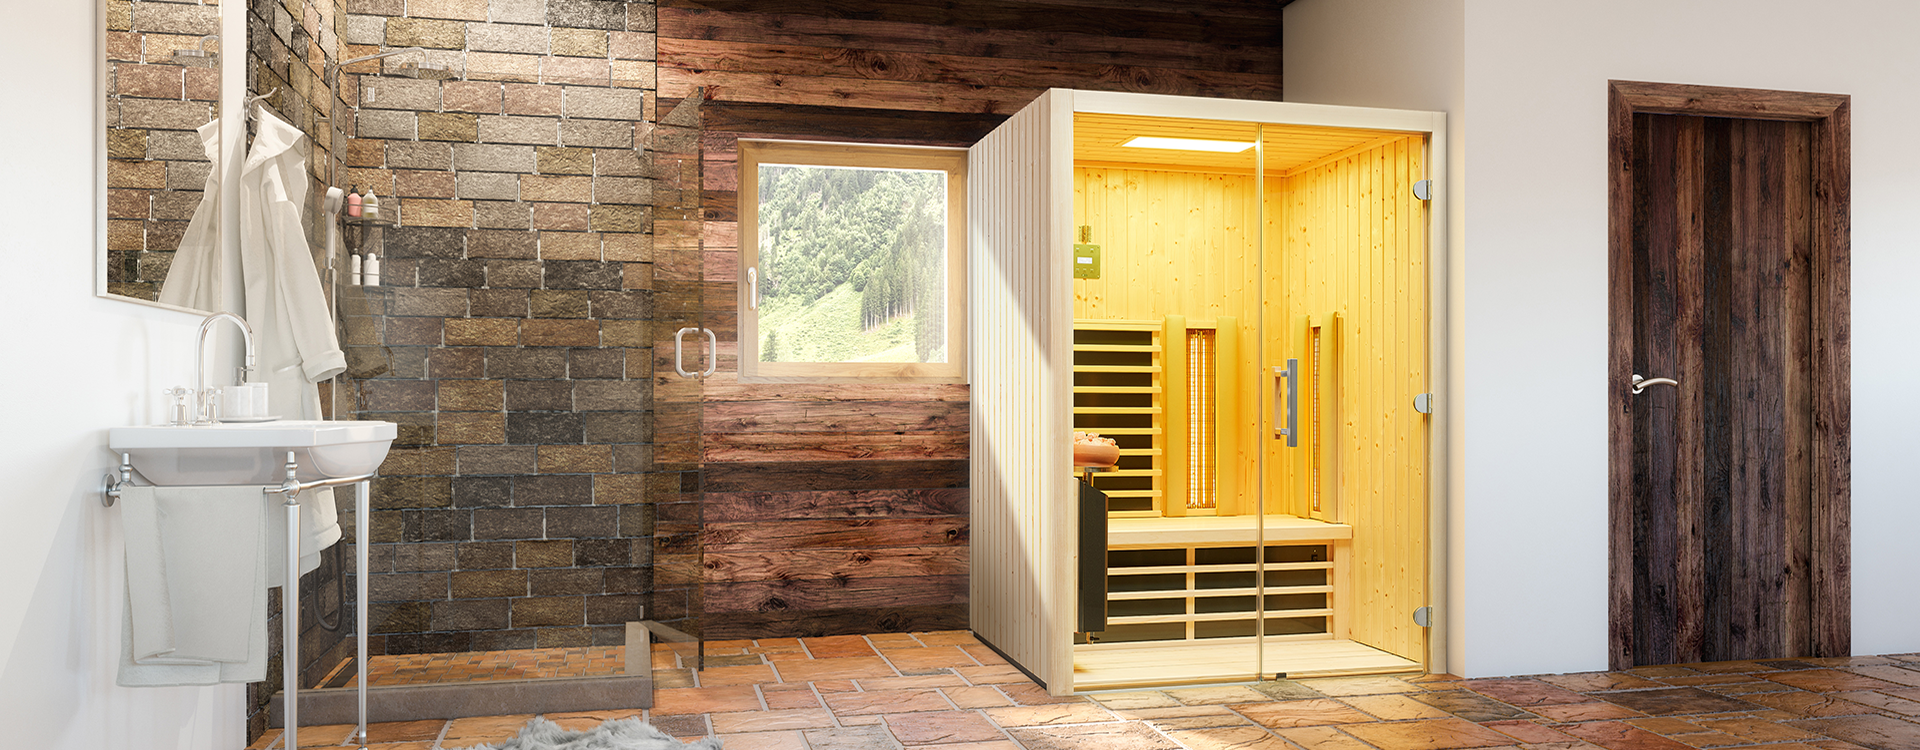 Eingebaute Infrarotkabine in einem rustikalen Badezimmer mit einer Stein- und Holzwand